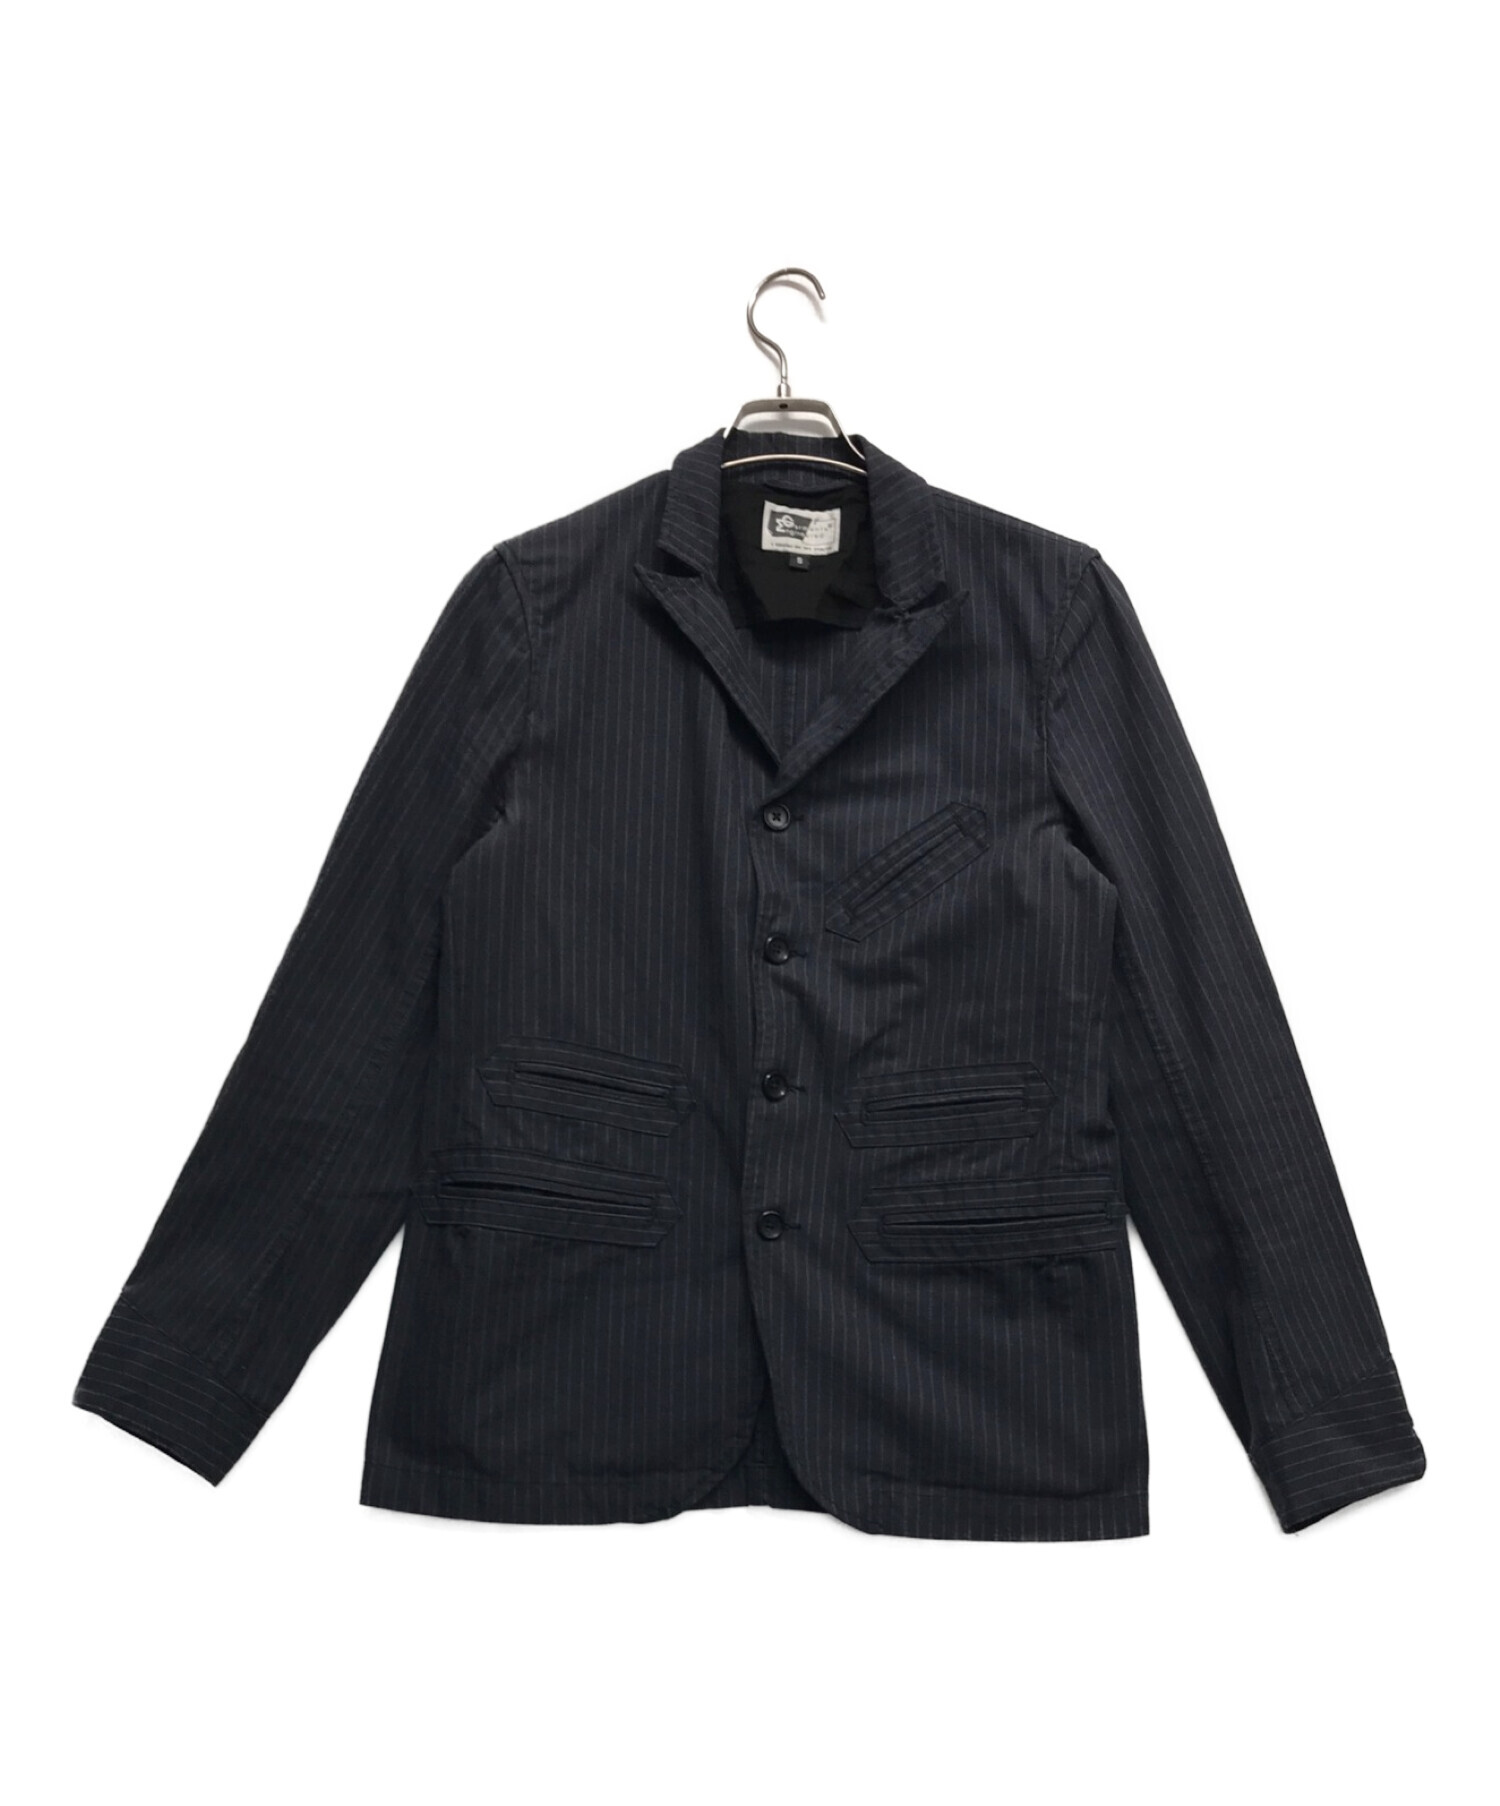 【美品】  Engineered Garments / エンジニアドガーメンツ | コットン 3B シングルブレスト ジャケット 袖裏ジャガード刺繍切替 | S | ブラック | メンズ